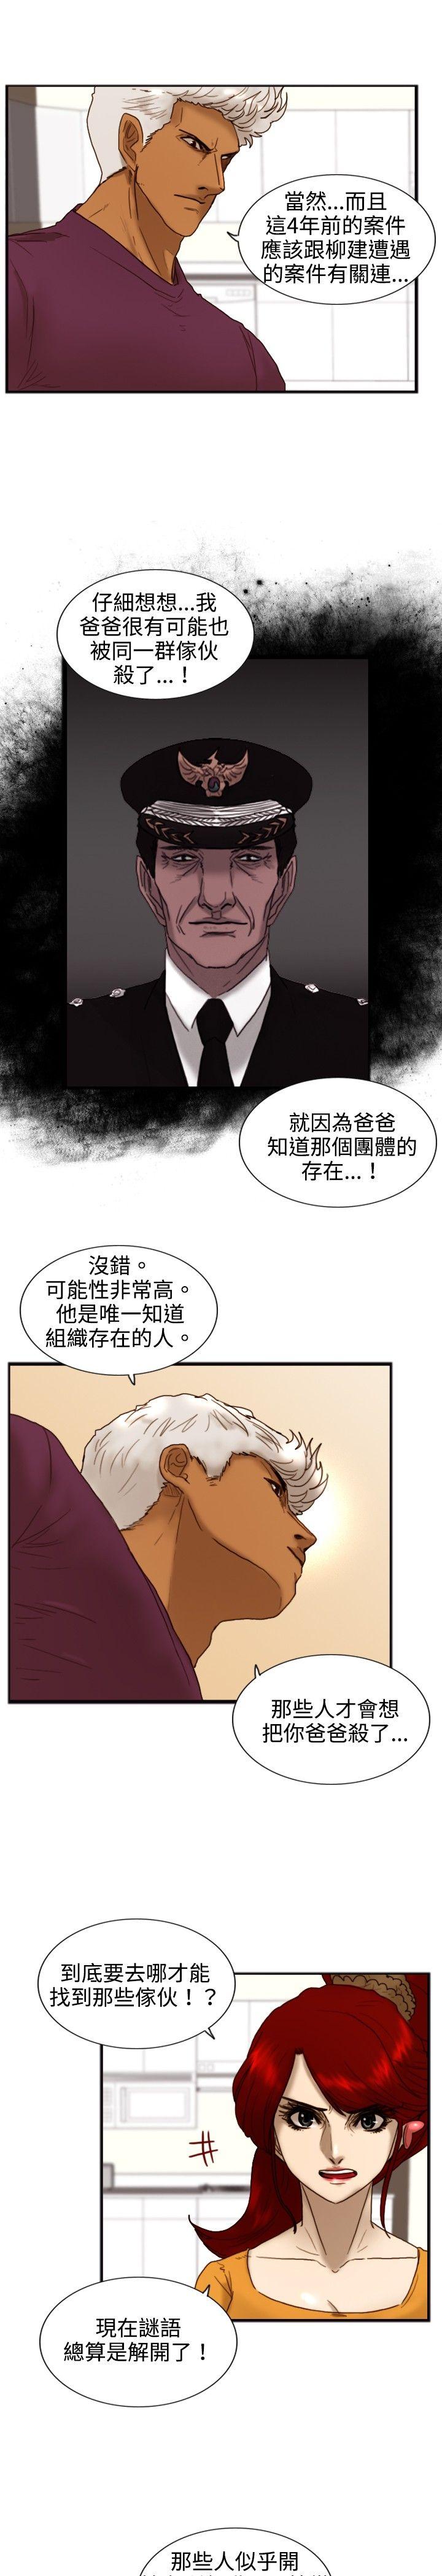 韩国污漫画 覺醒(完結) 第19话两位刑警 21